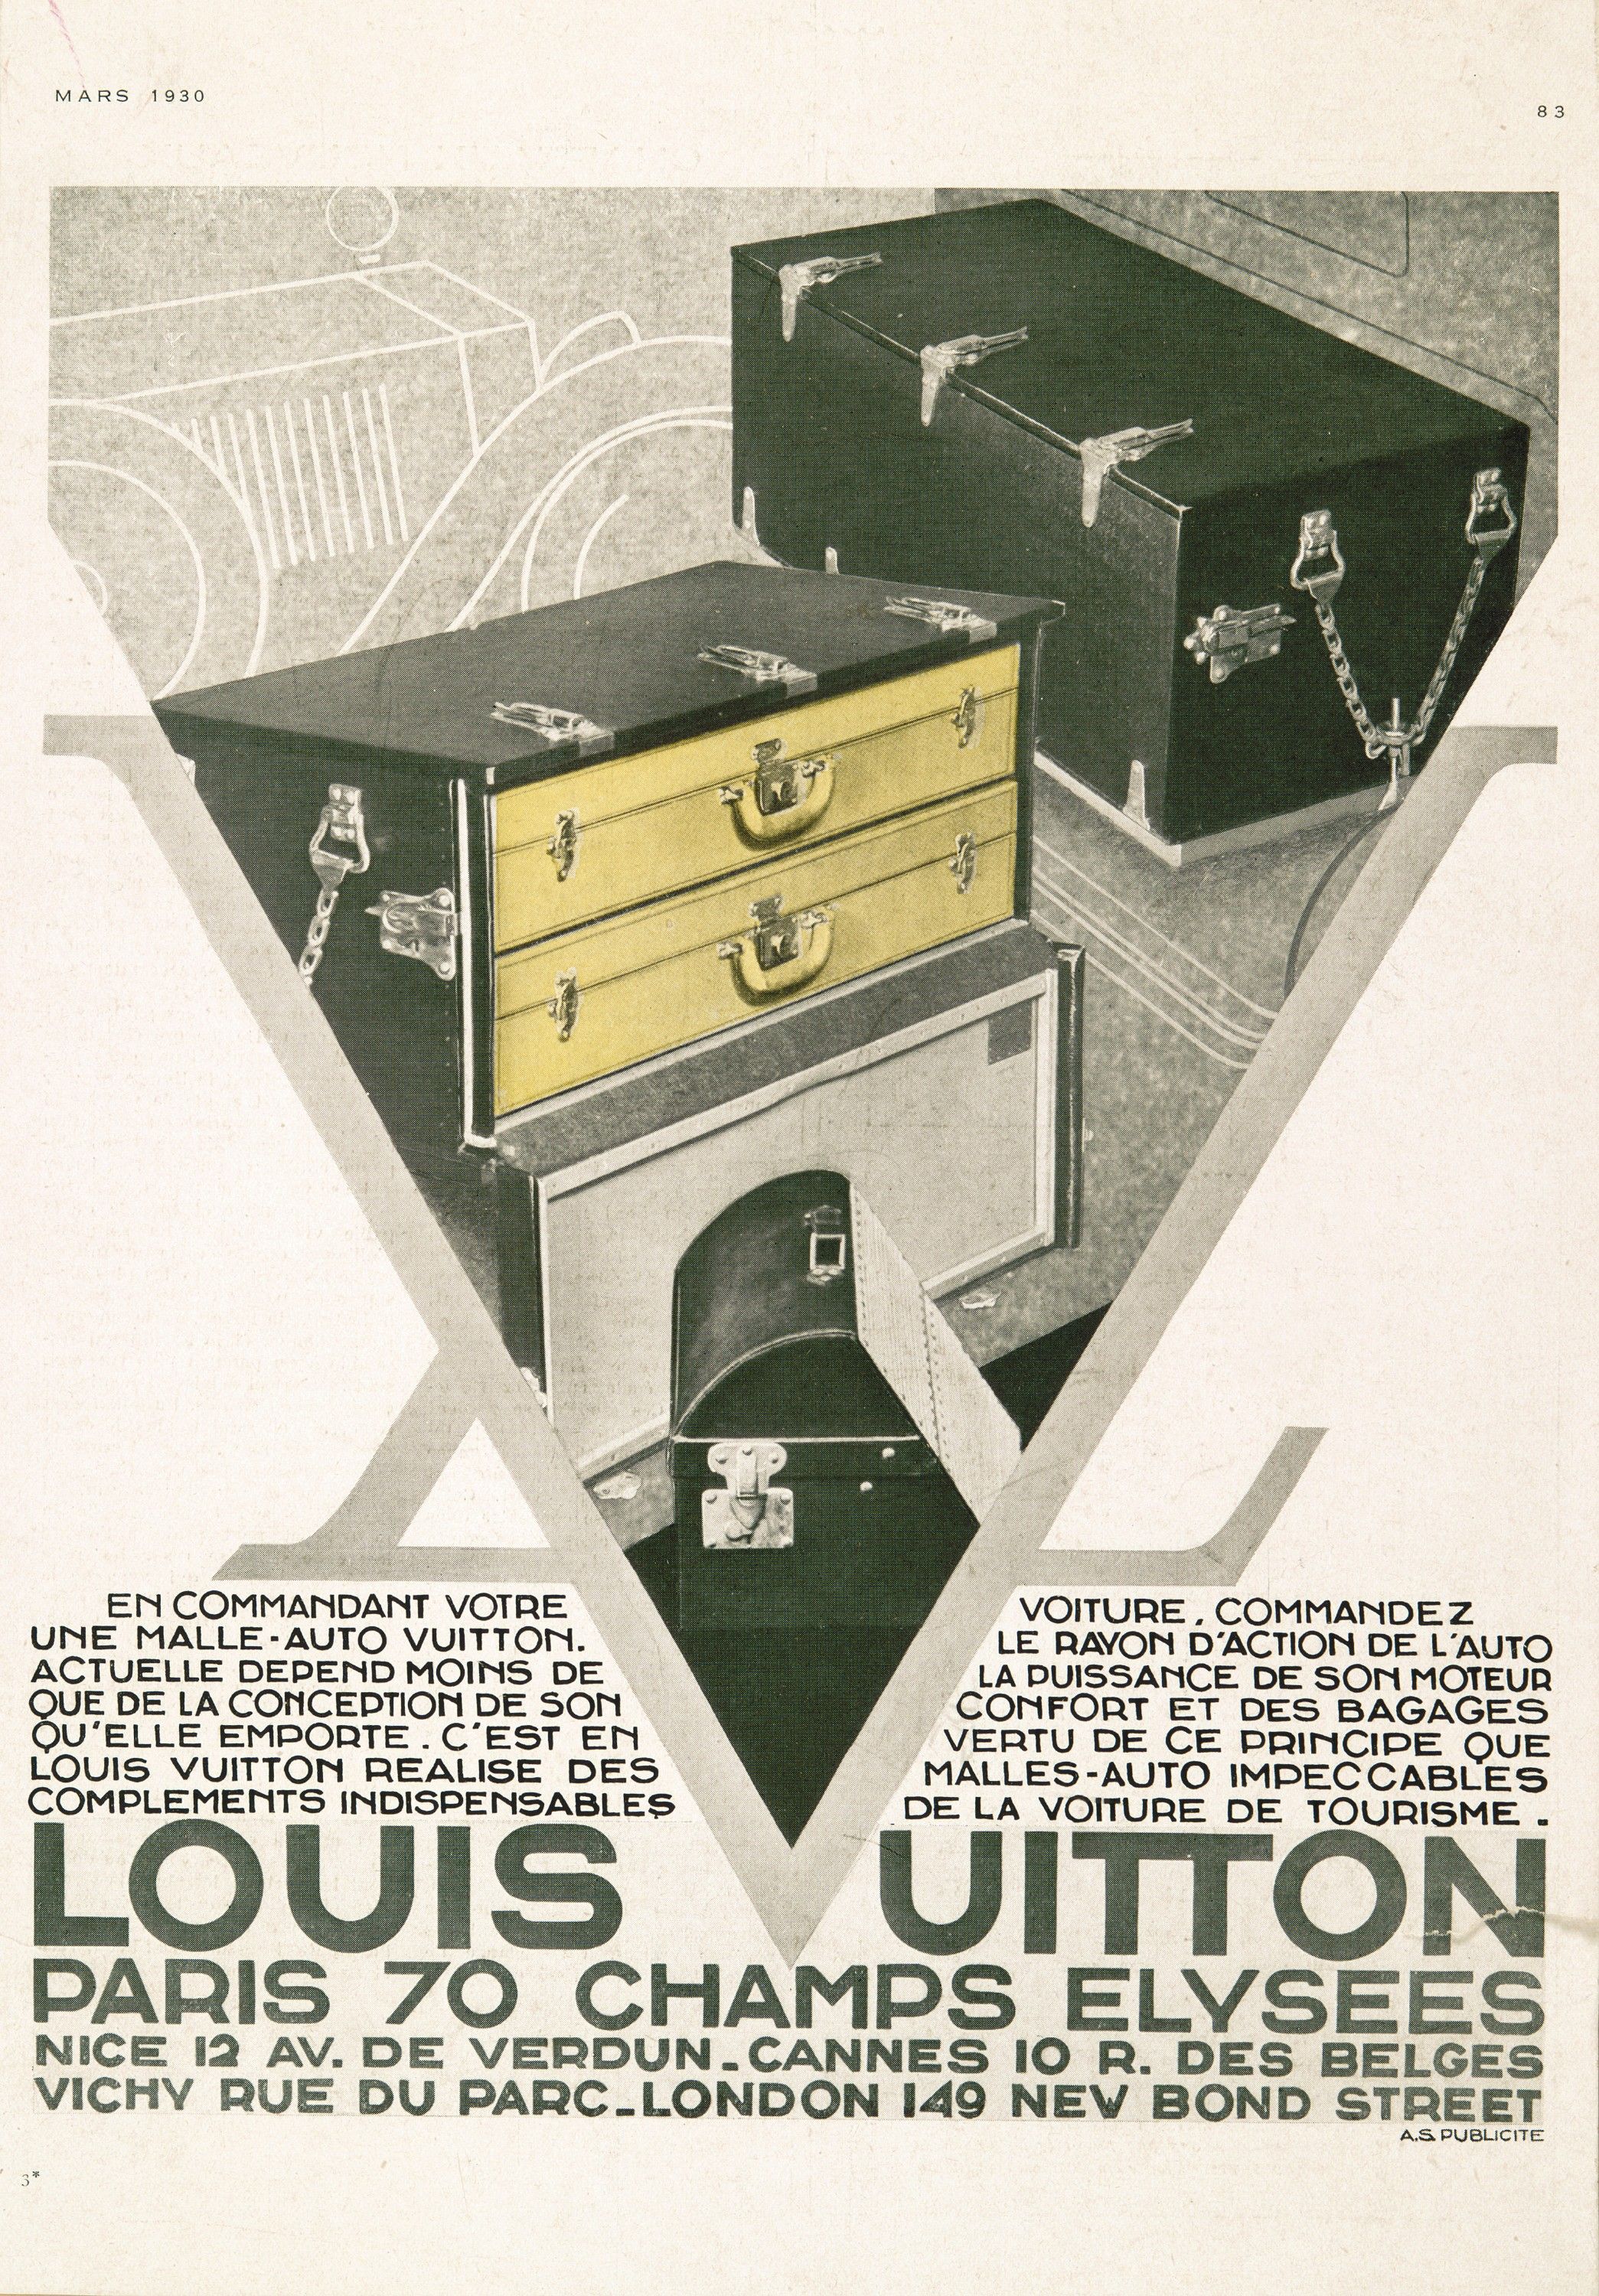 La fascinante historia de la maleta: del baúl de Louis Vuitton a